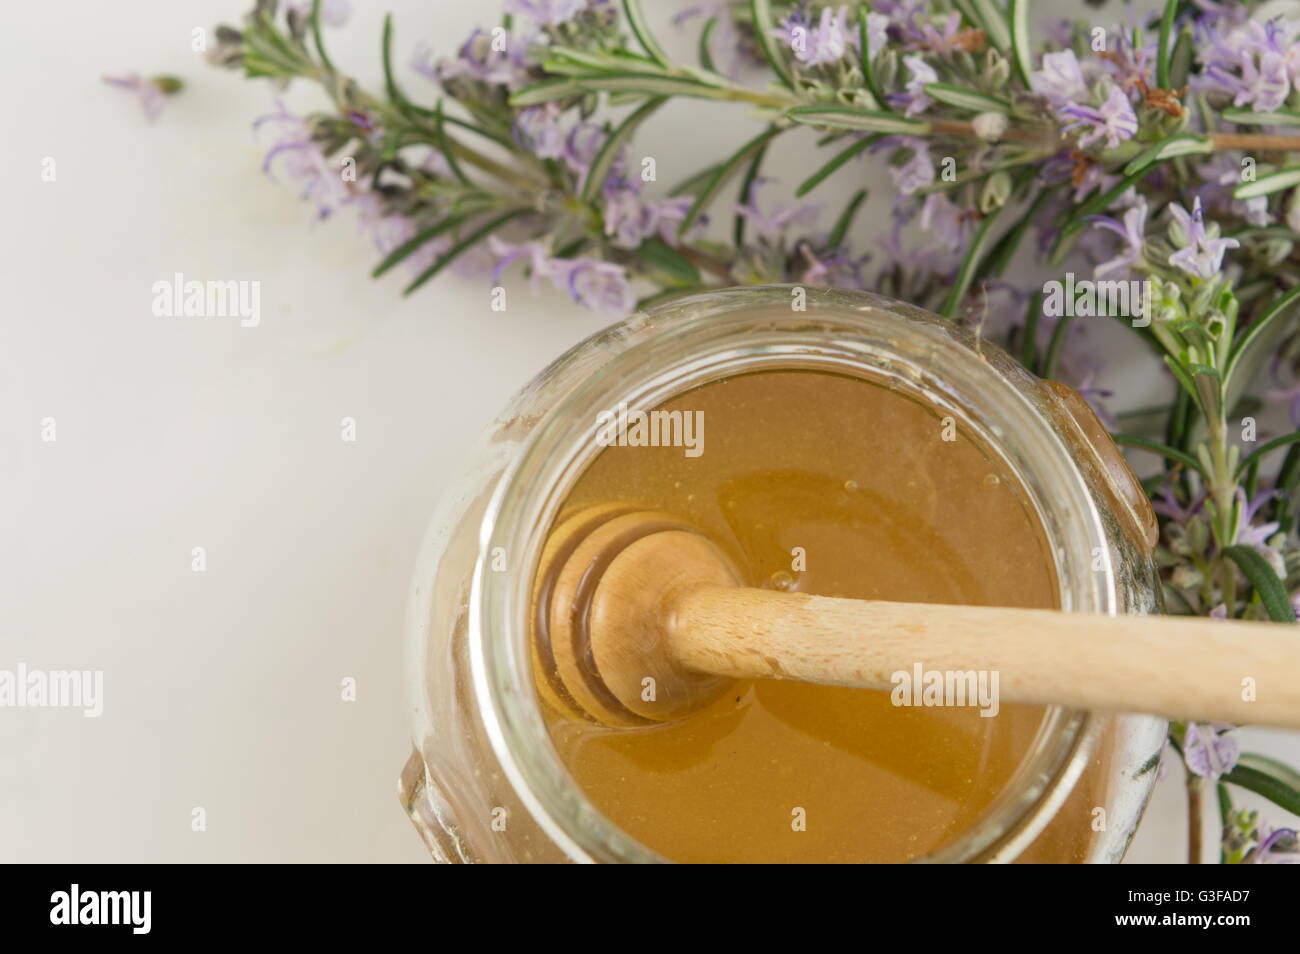 Des fleurs fraîches et un pot de miel sucré Banque D'Images